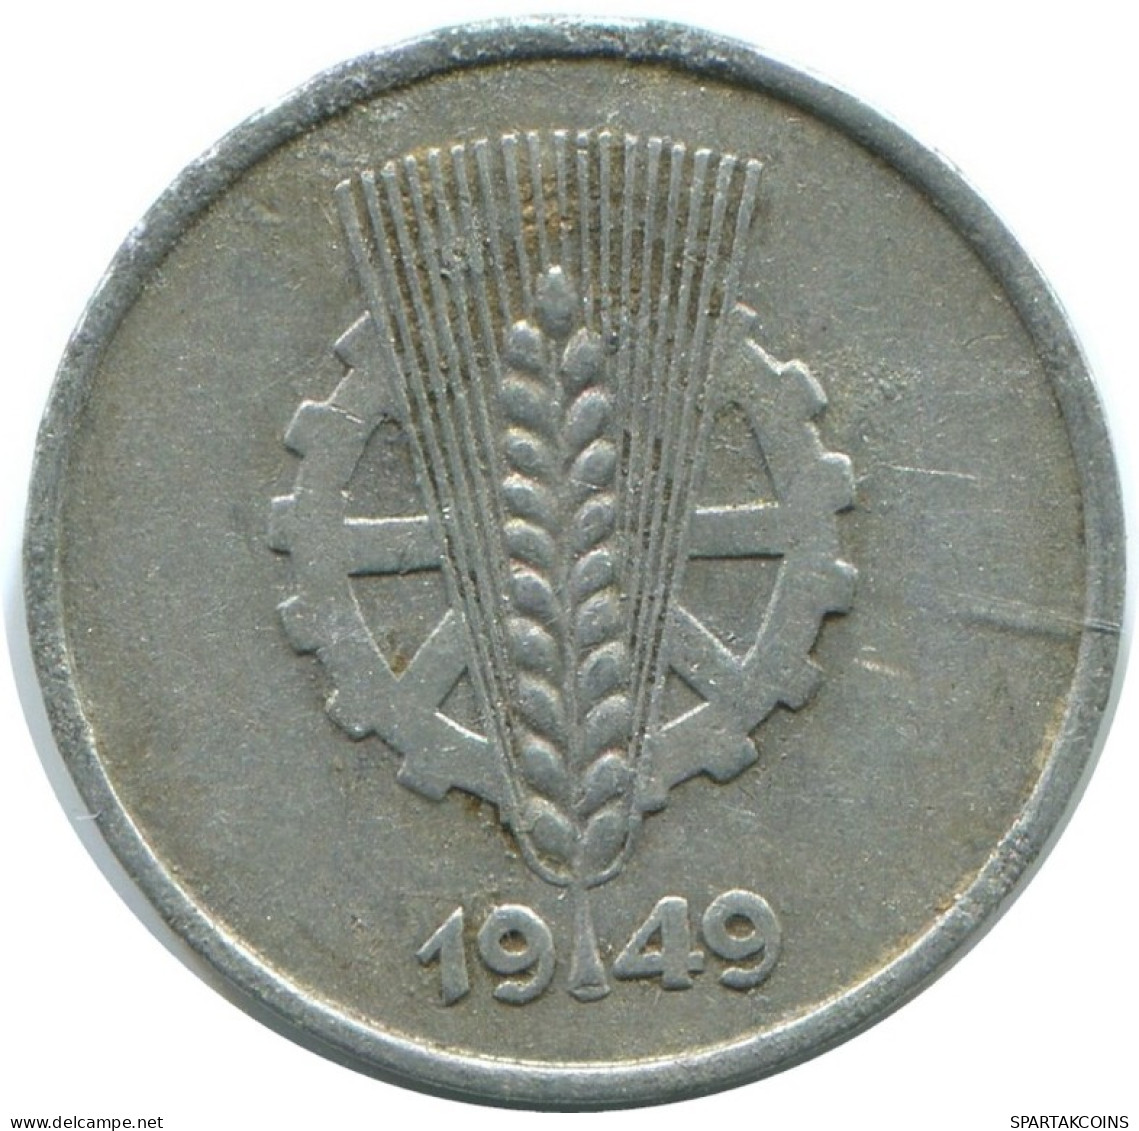 1 PFENNIG 1949 A DDR EAST GERMANY Coin #AE036.U.A - 1 Pfennig